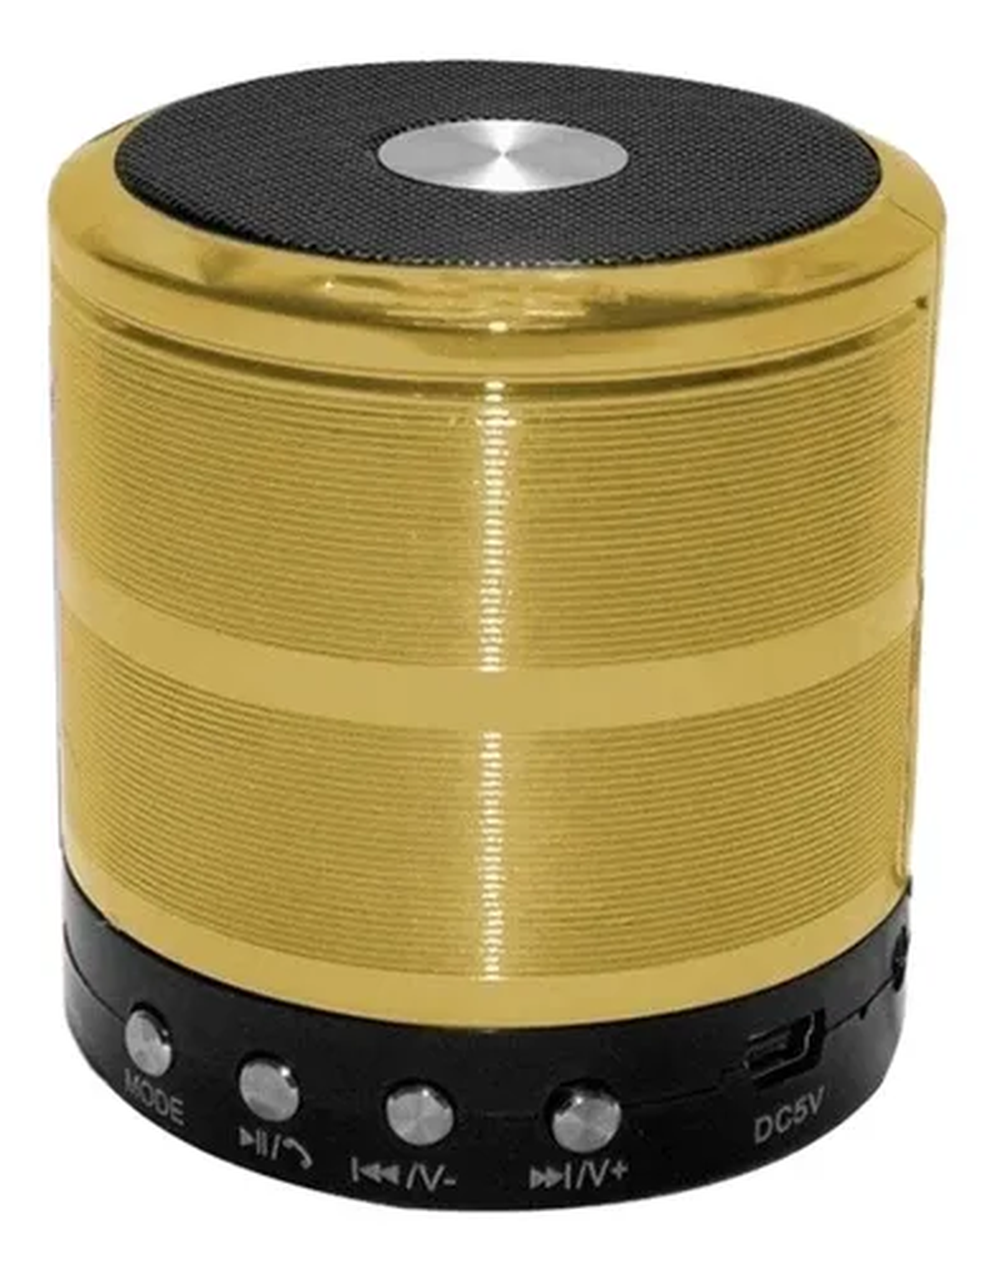 Alto-falante Mini Speaker WS-887 com bluetooth